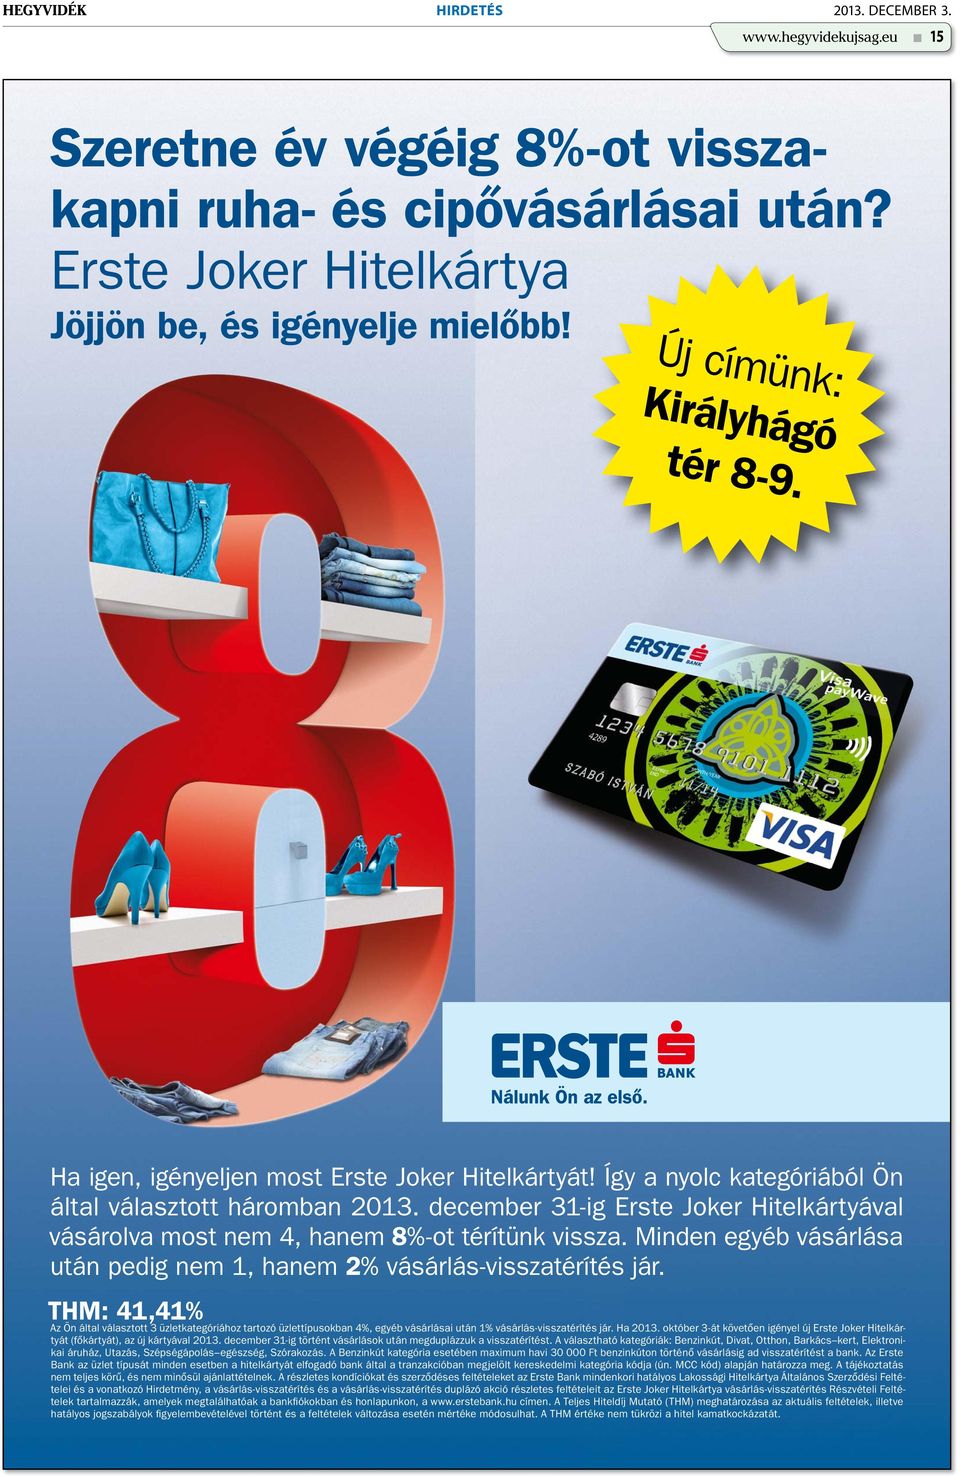 december 31-ig Erste Joker Hitelkártyával vásárolva most nem 4, hanem 8%-ot térítünk vissza. Minden egyéb vásárlása után pedig nem 1, hanem 2% vásárlás-visszatérítés jár.